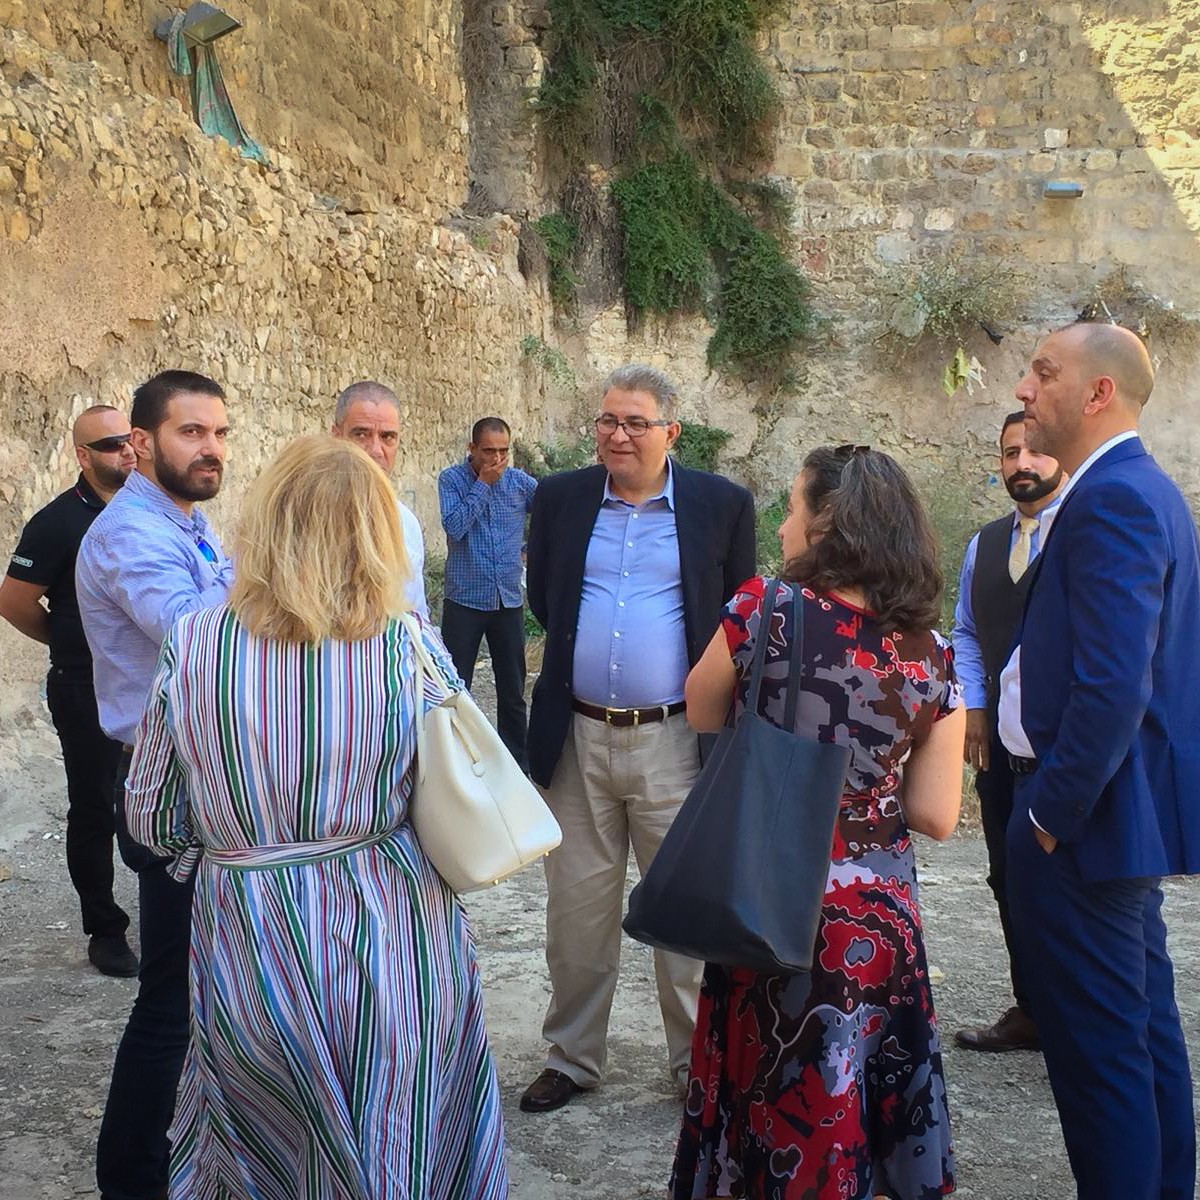 رئيس جامعة القدس أبو كشك وممثل الاتحاد الأوروبي يتفقدا بركة البطرك بالبلدة القديمة في مدينة القدس2.jpg